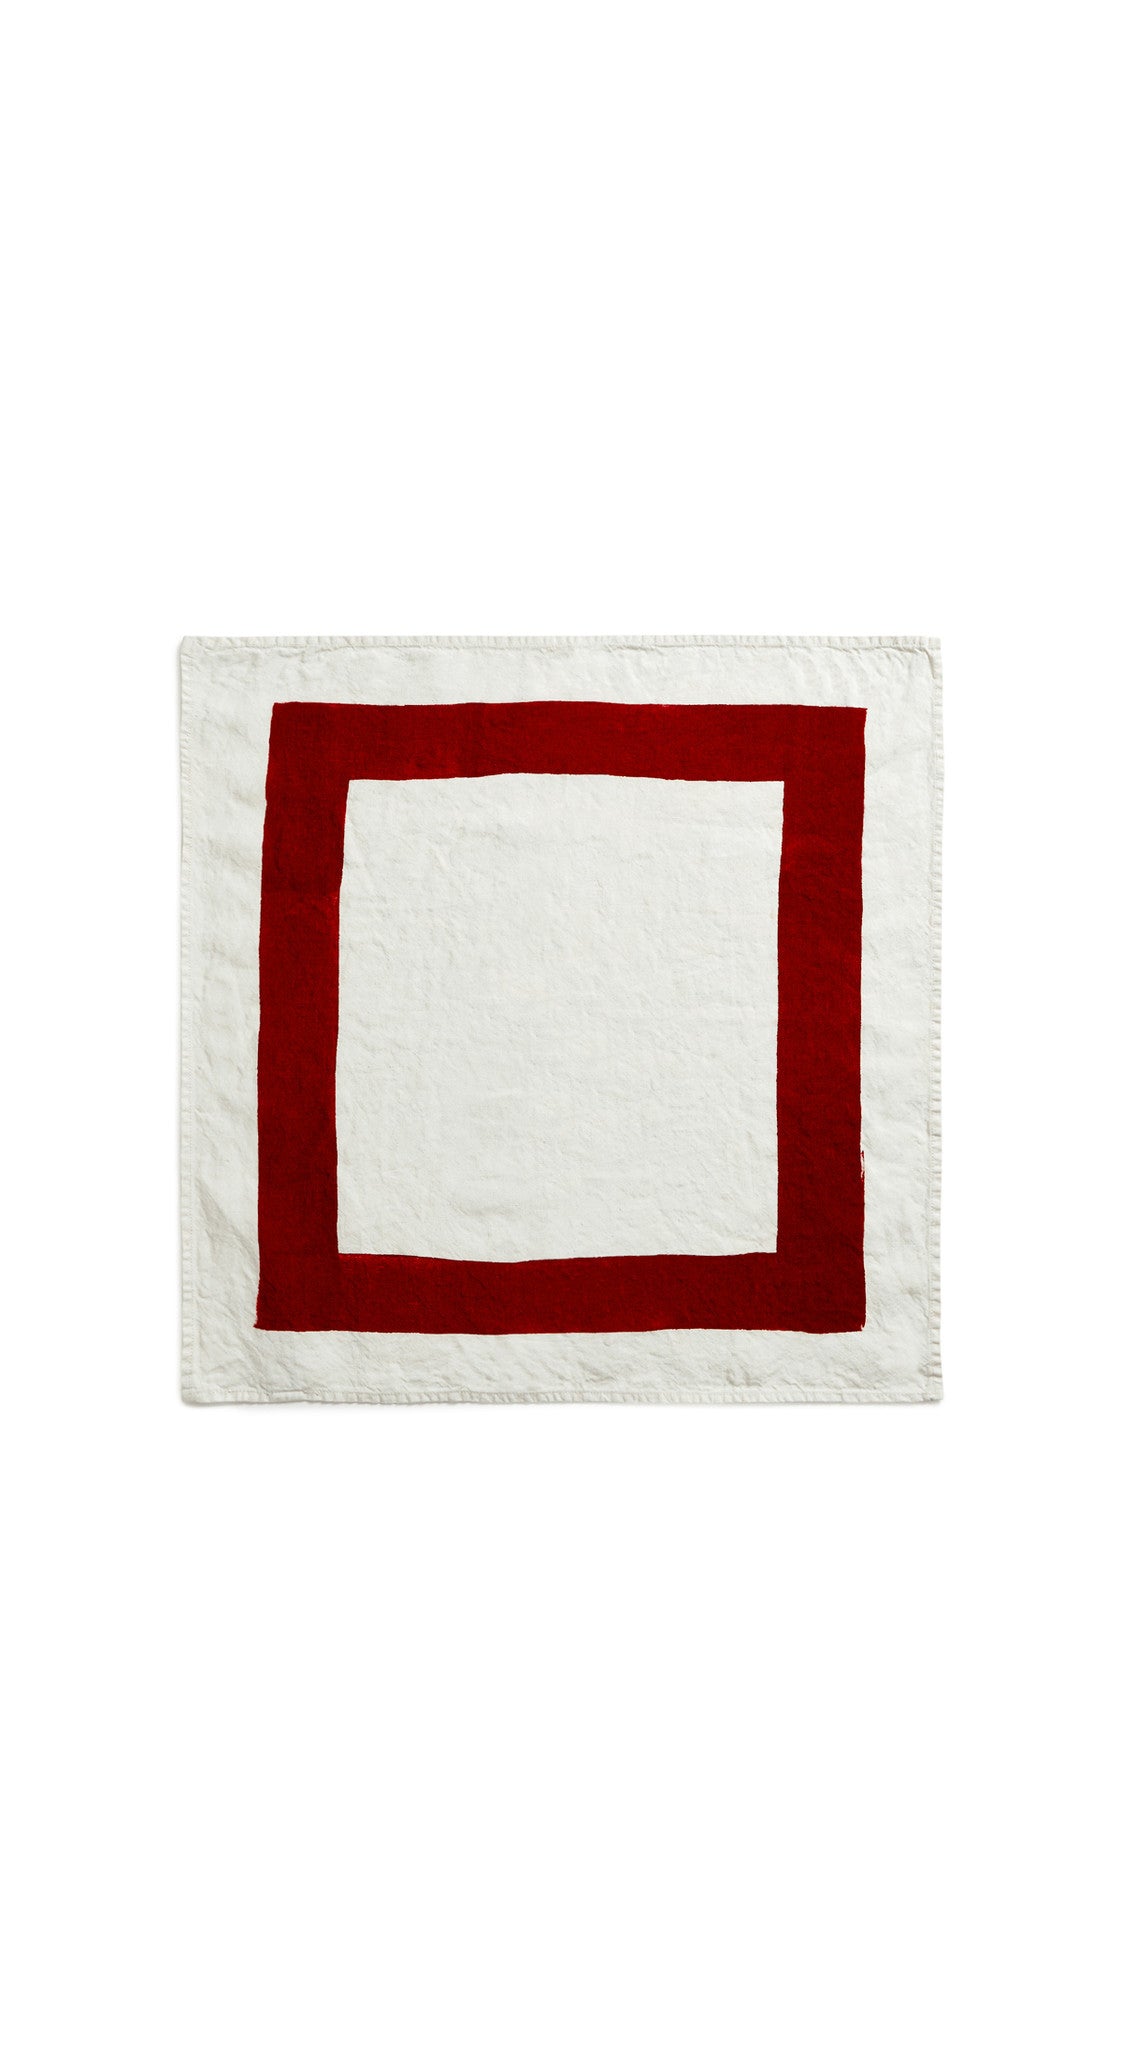 Cornice Linen Napkin in Claret Red, 50x50cm